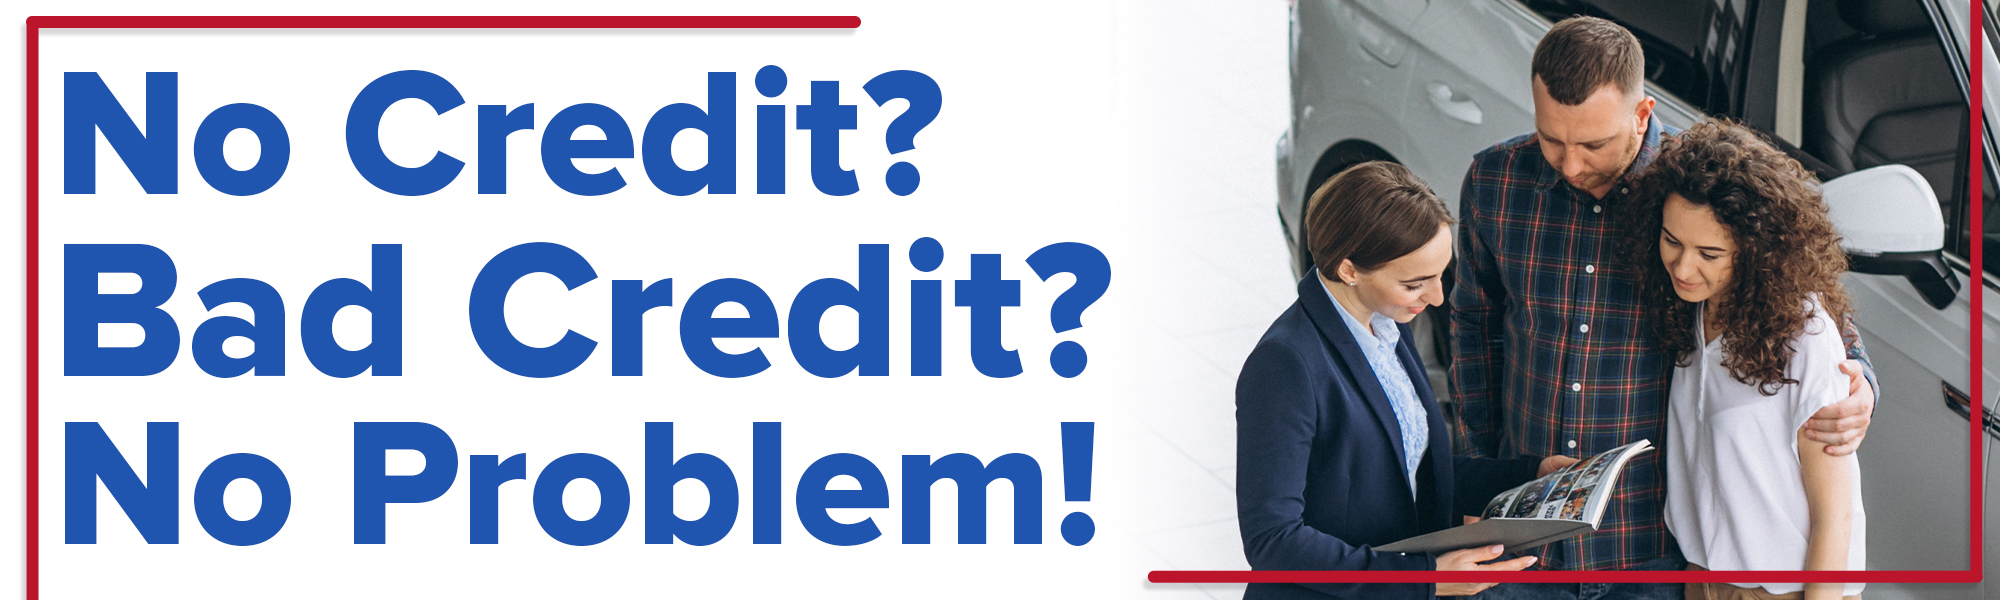 Bad Credit/No Credit Options | Norristown CDJR | PA Car Financing